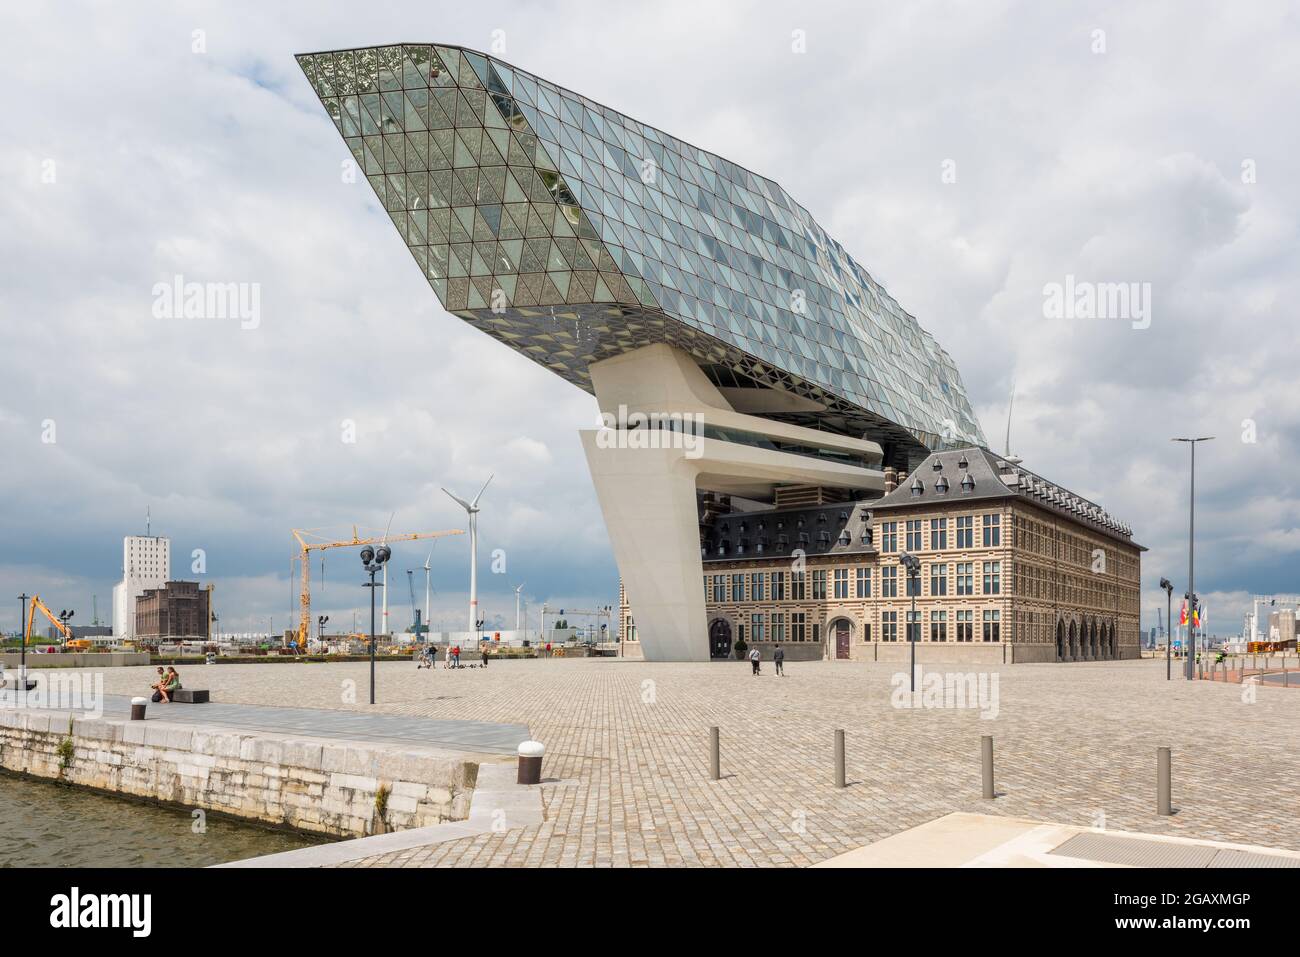 Port House en el Puerto de Amberes, Bélgica. El edificio gubernamental fue diseñado por el arquitecto iraquí-británico Zaha Hadid y se inauguró en 2016 Foto de stock